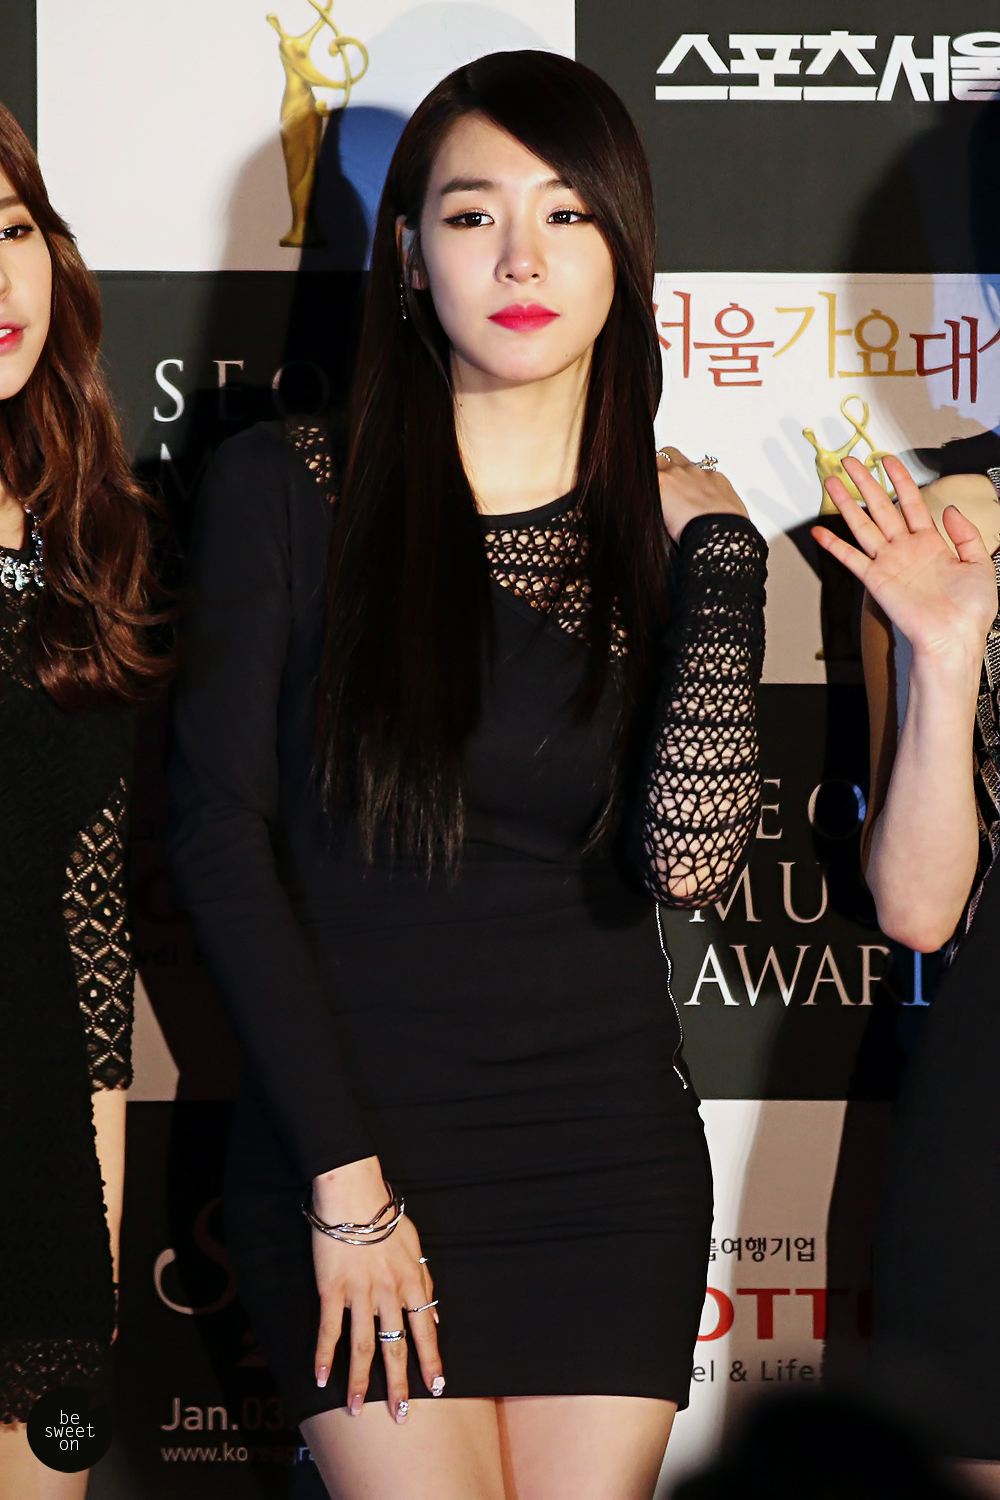 [PIC][23-01-2014]SNSD tham dự "23rd Seoul Music Awards" vào tối nay - Page 4 2673904852E5004531E1D8